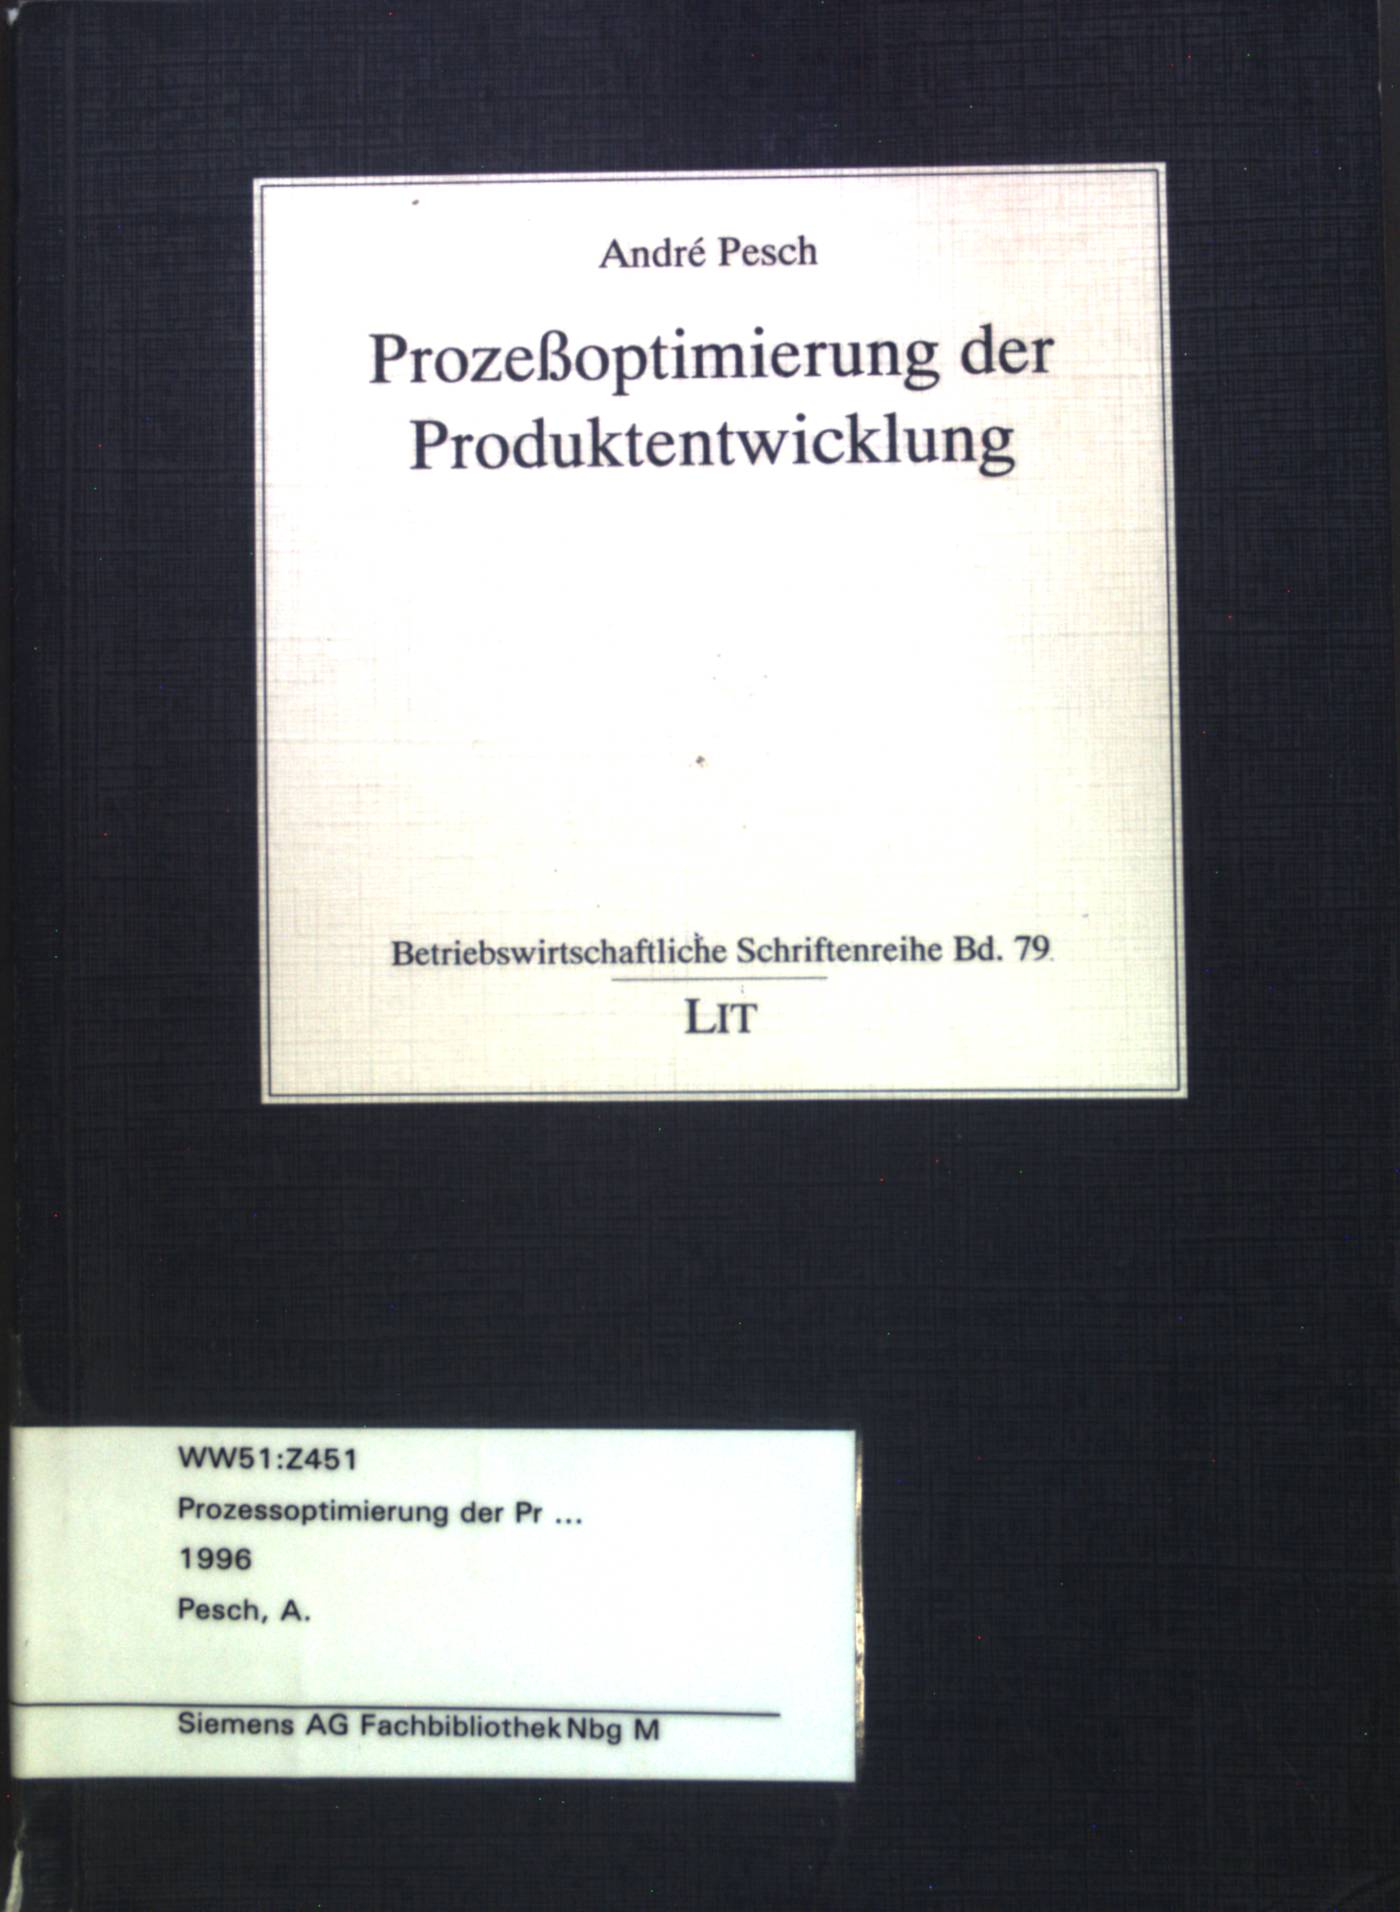 Prozeßoptimierung der Produktentwicklung. Betriebswirtschaftliche Schriftenreihe; Band 79. - Pesch, André